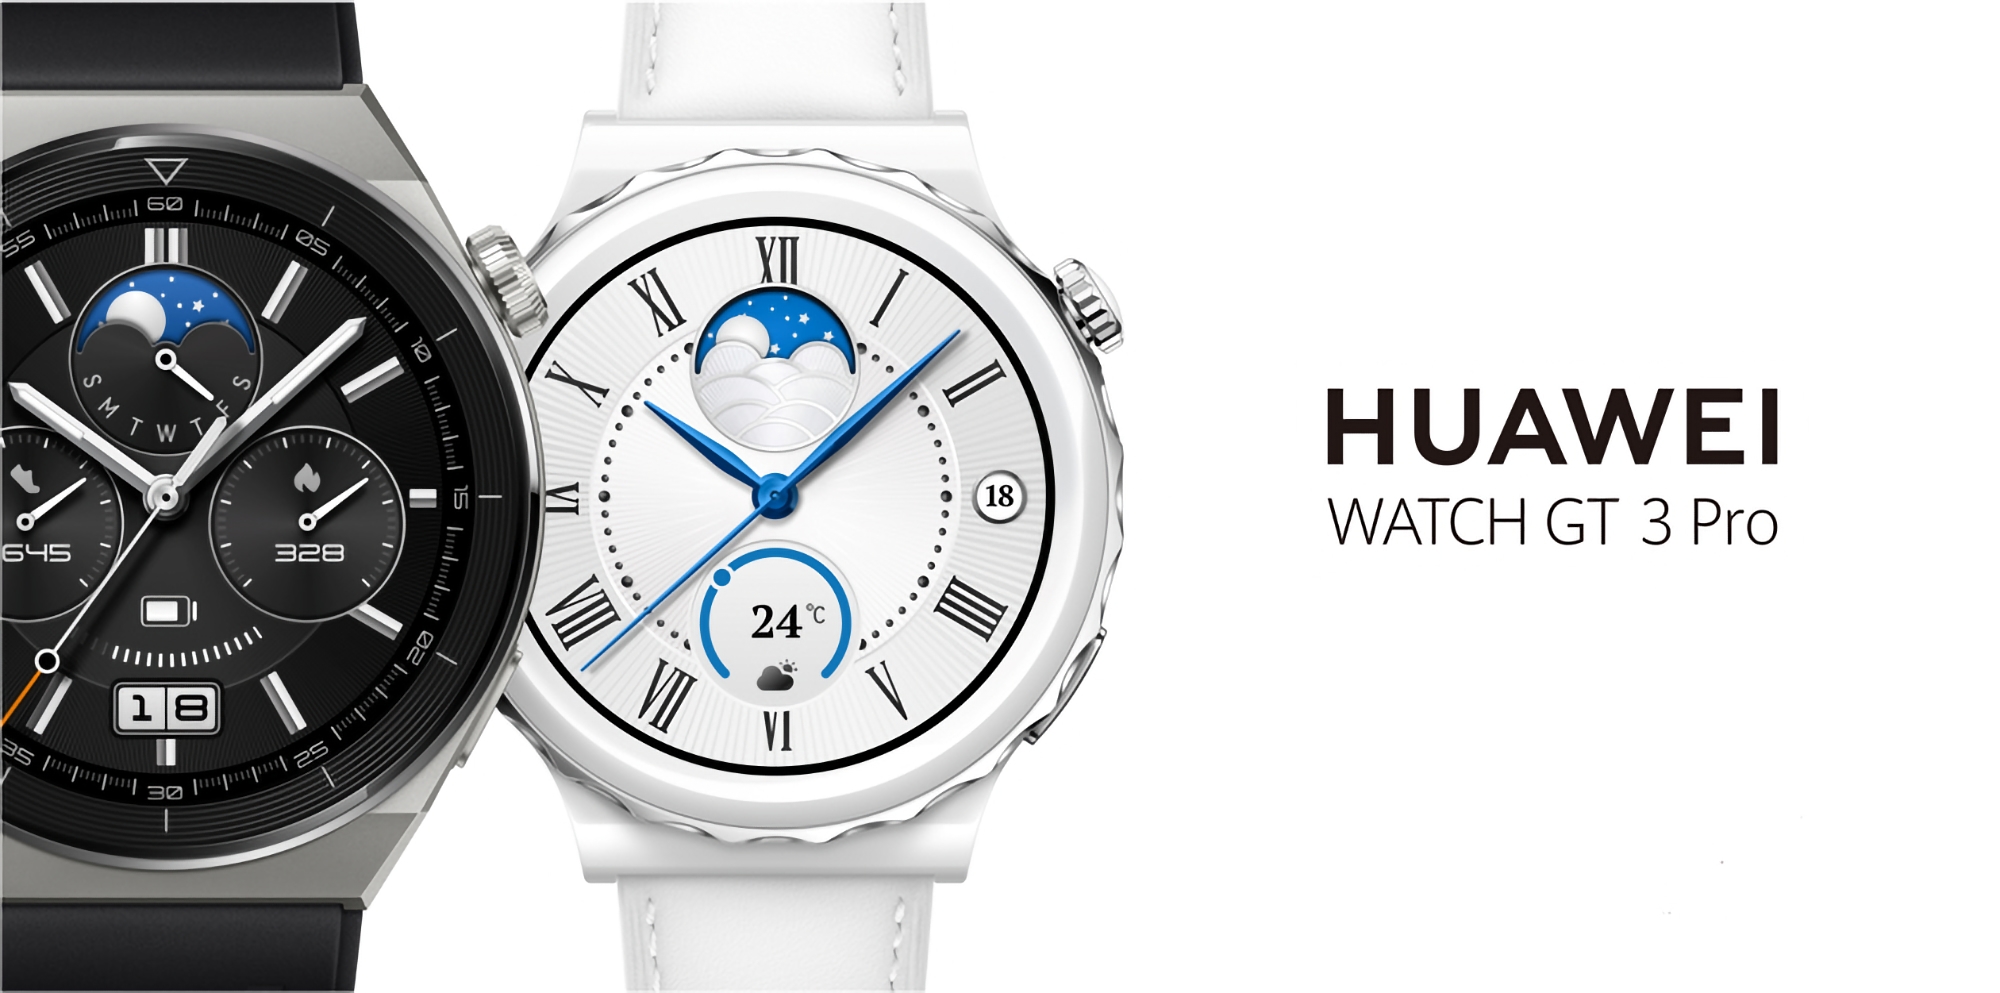 Huawei Watch GT 3 Pro ha ricevuto una nuova versione software sul mercato globale